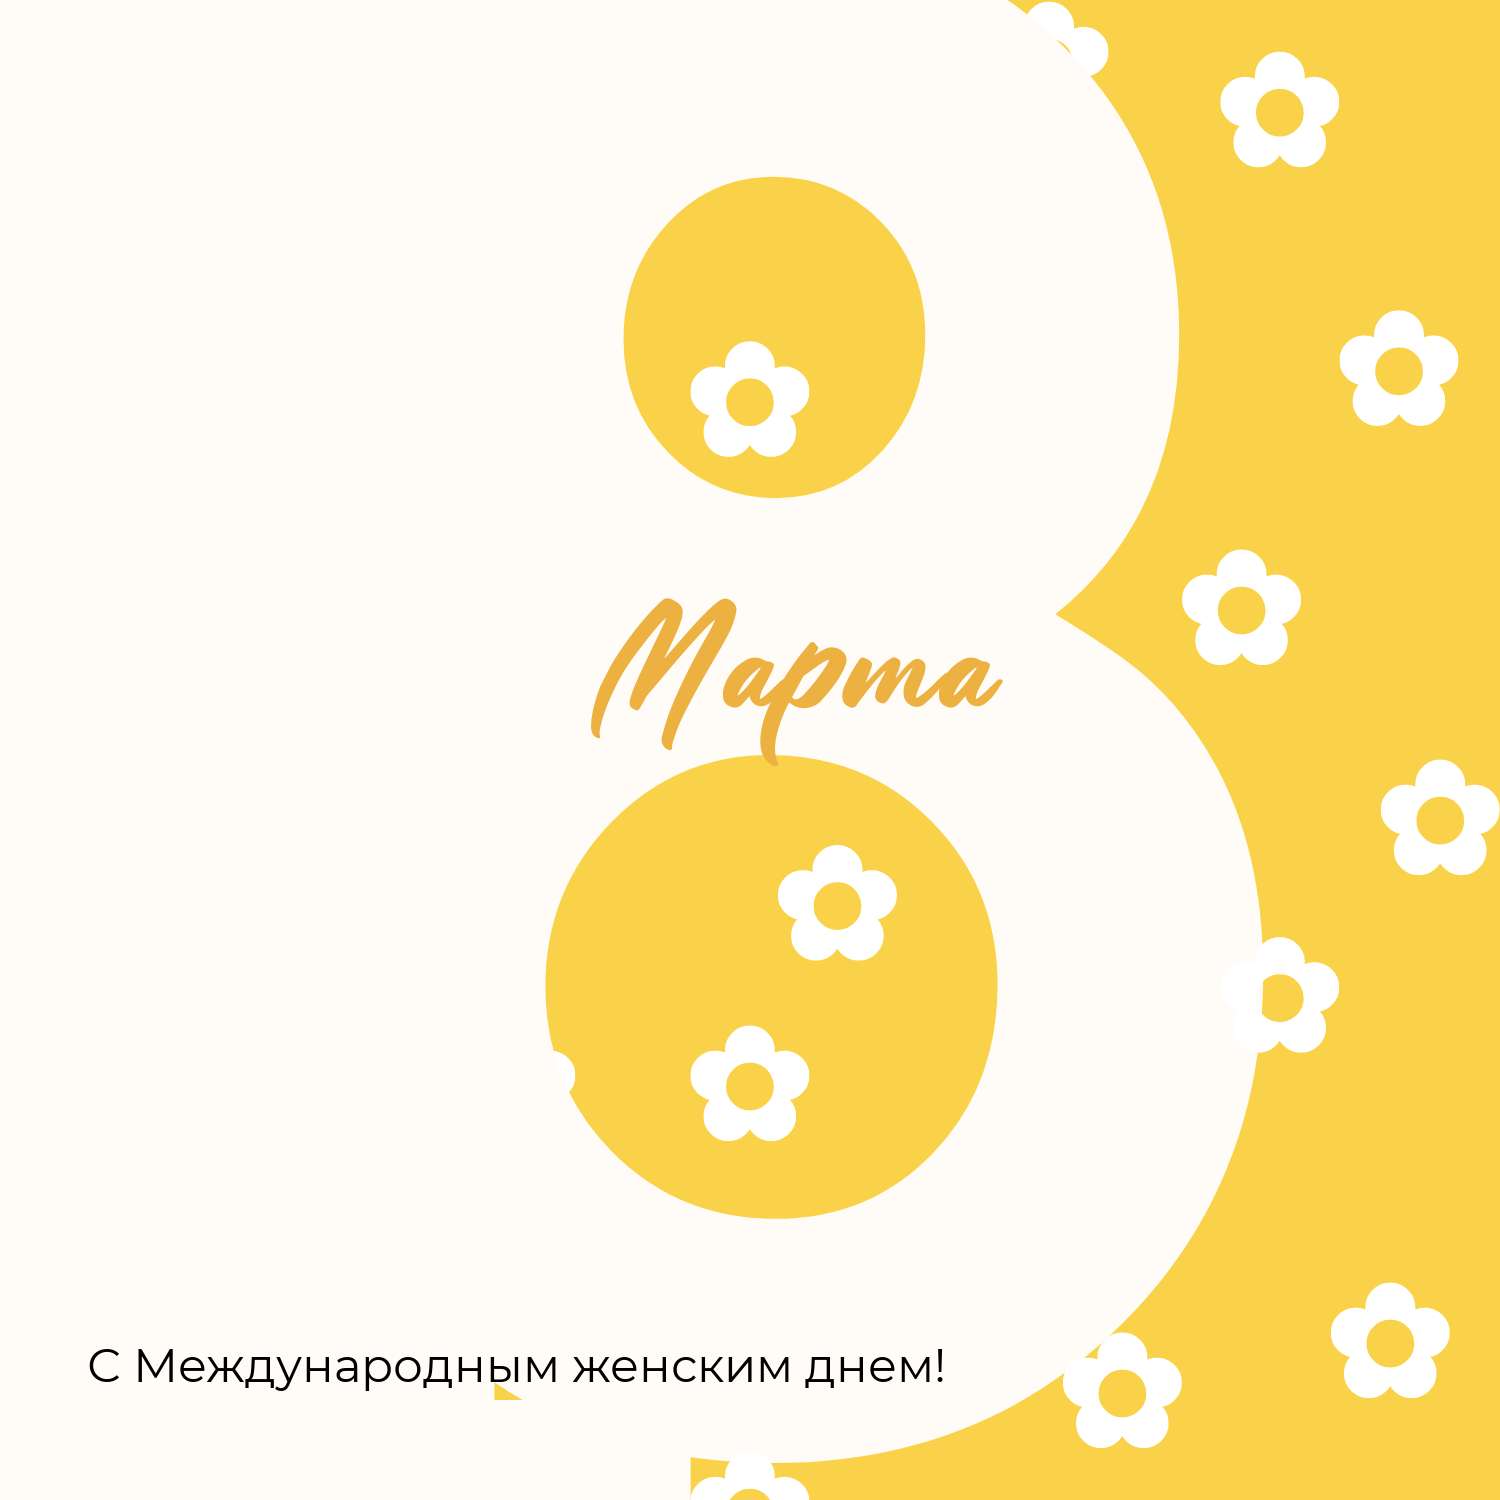 Бело-желтый пост для Инстаграм в стиле минимализм с крупной цифрой 8 и цветочками